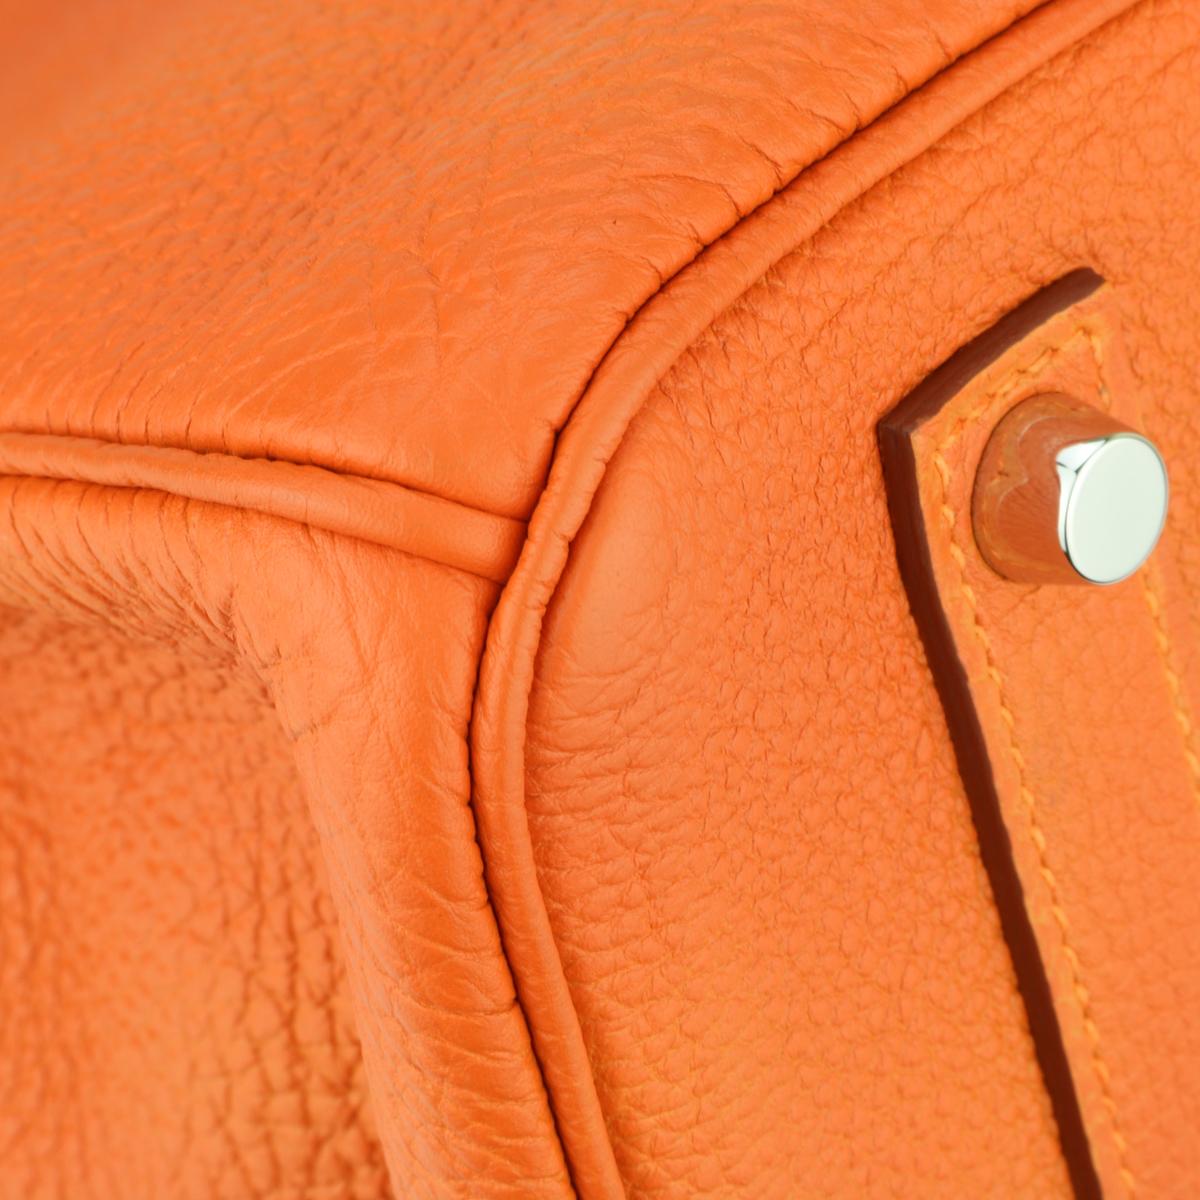 Hermès Birkin Bag 35cm Orange Togo Leather with Palladium Hardware Stamp M 2009 2